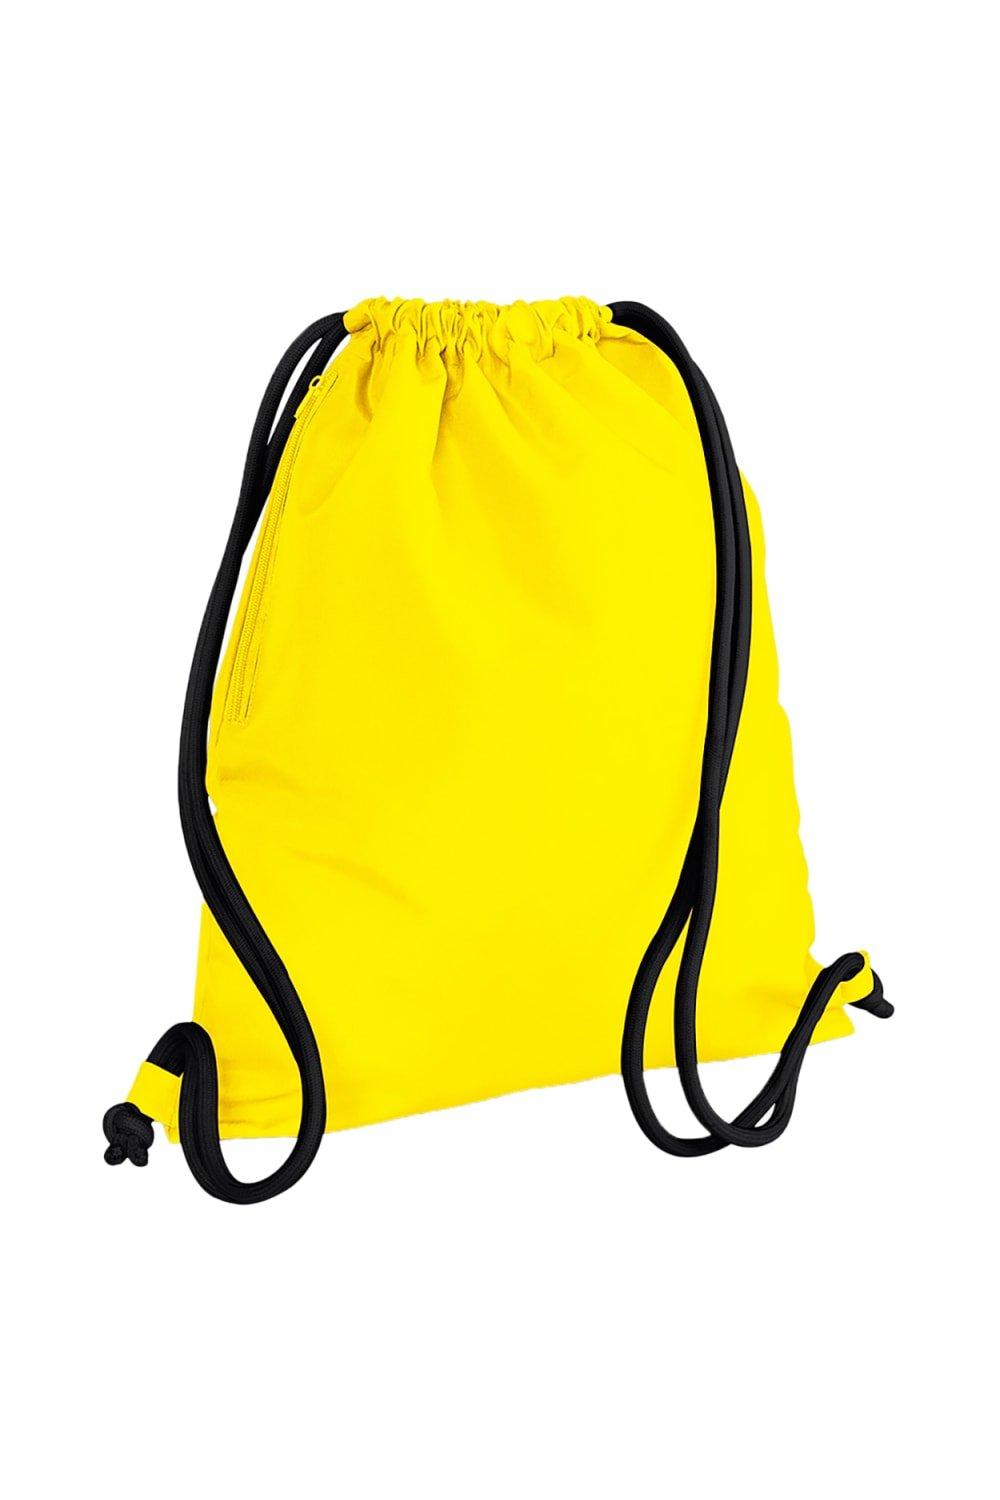 Сумка Icon на шнурке / Gymsac Bagbase, желтый сумка urban gymsac на шнурке sol s красный